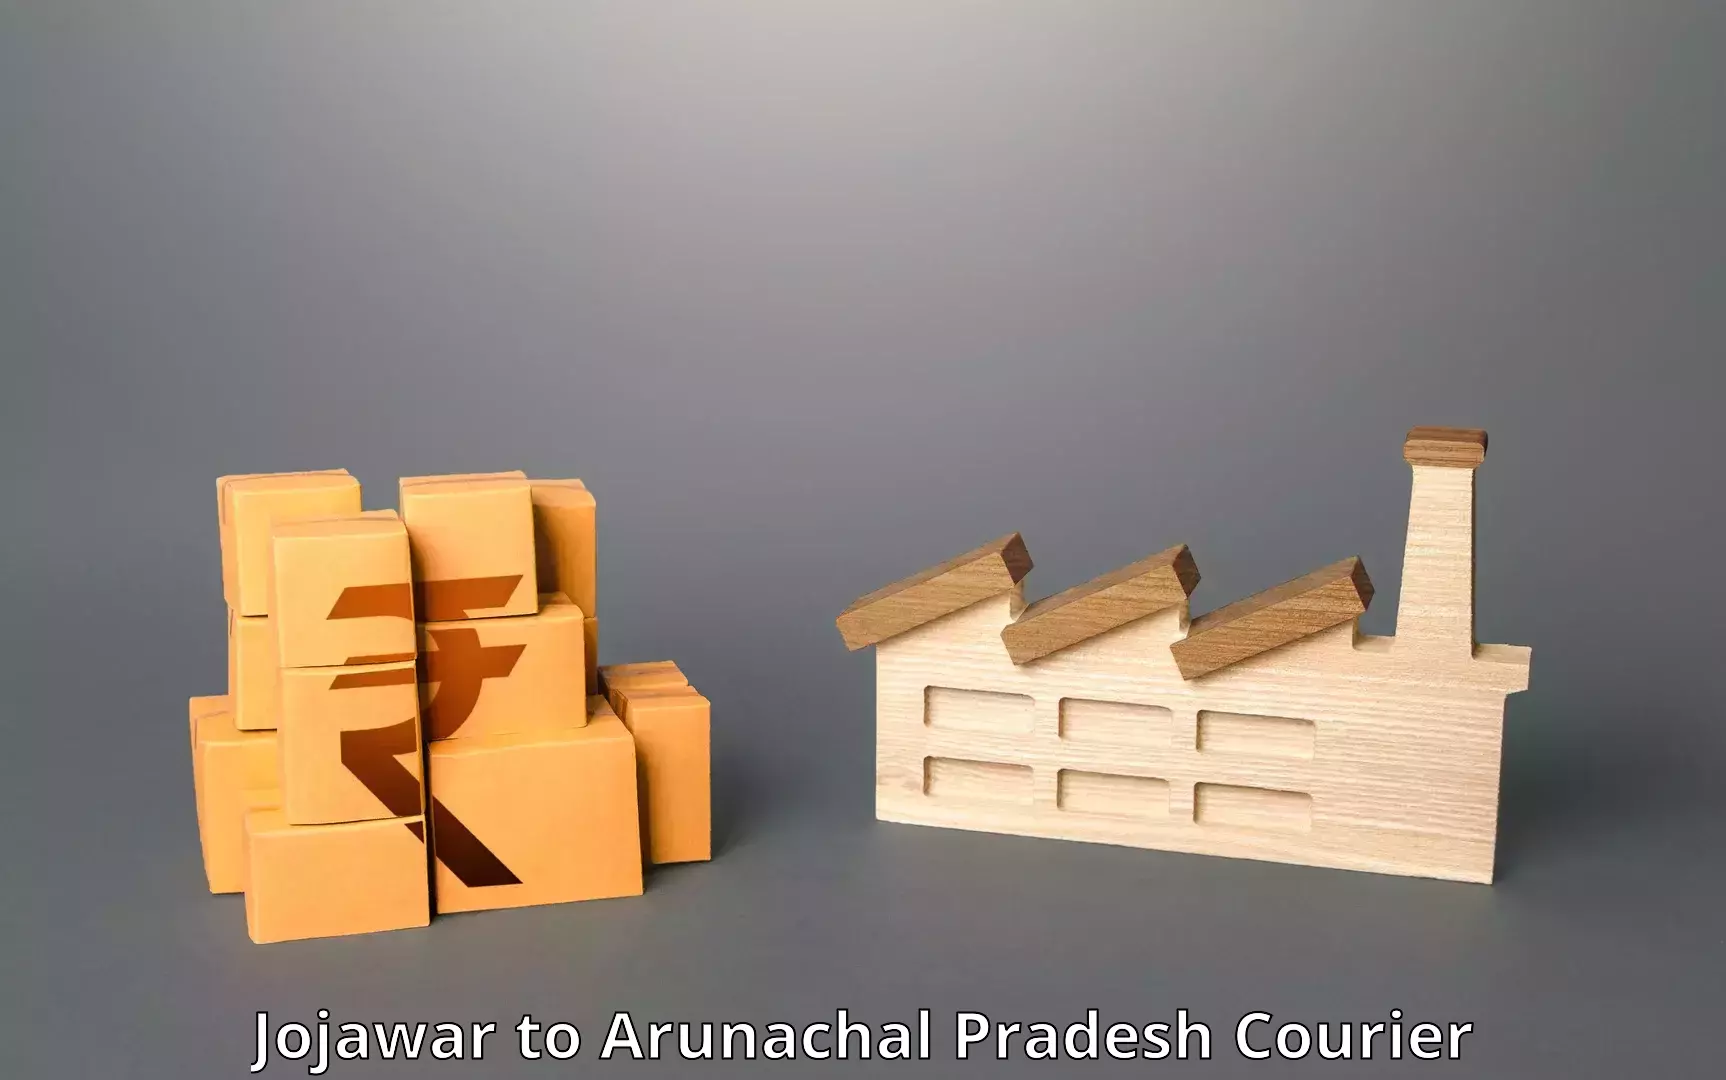 Cargo courier service Jojawar to Arunachal Pradesh